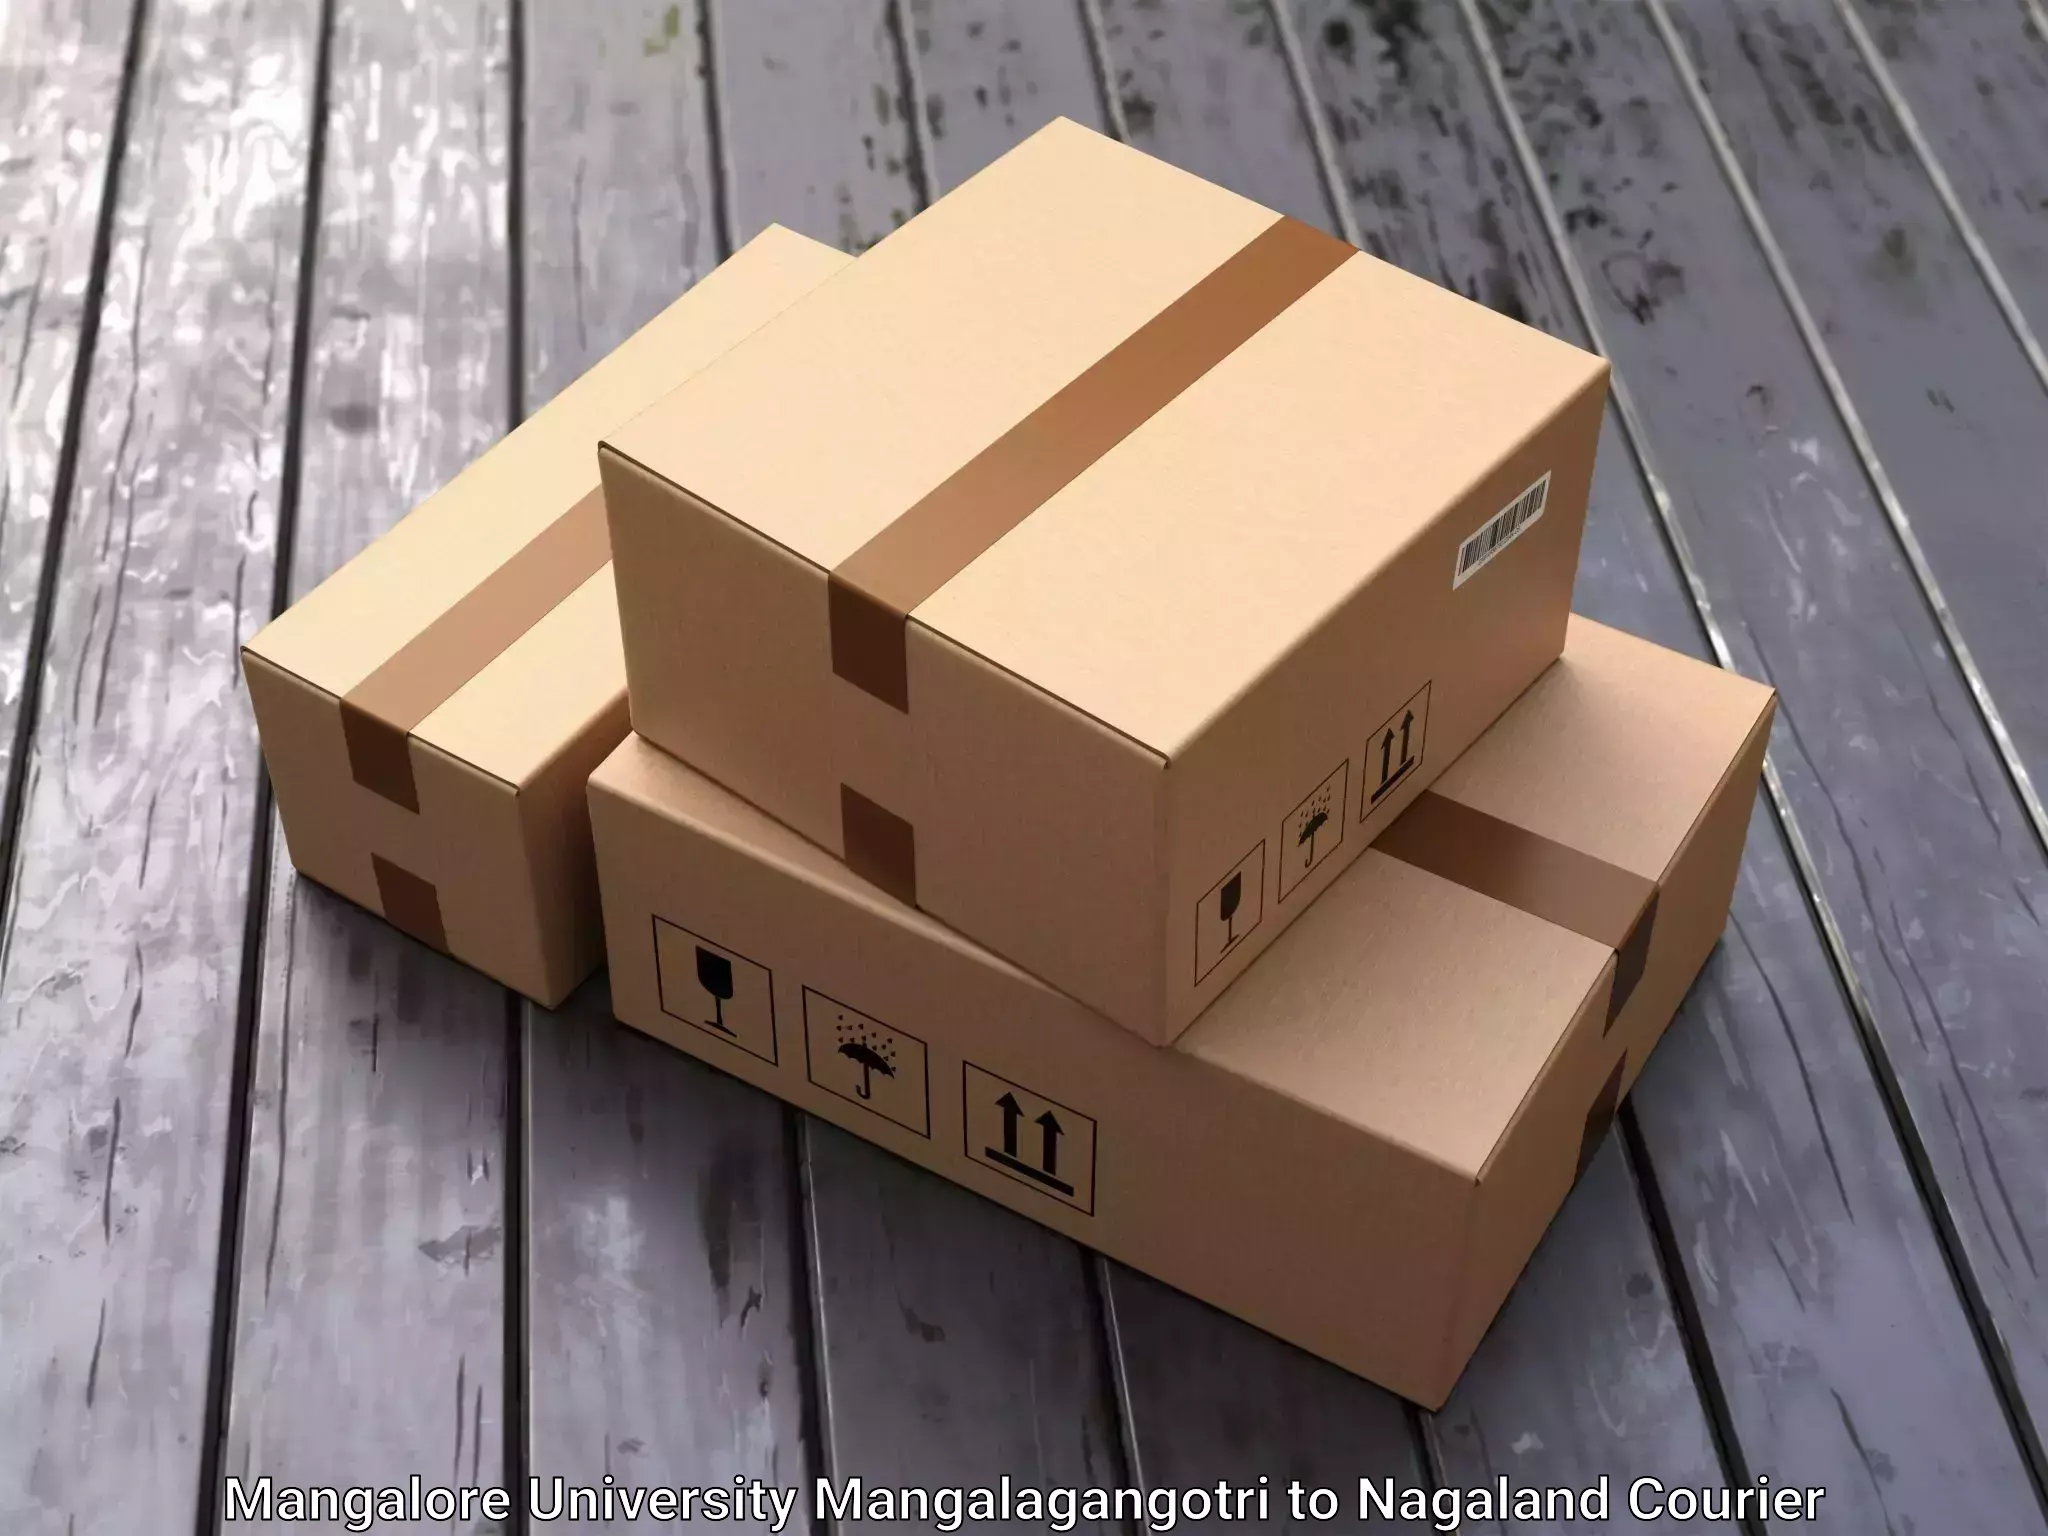 Furniture moving plans Mangalore University Mangalagangotri to Nagaland